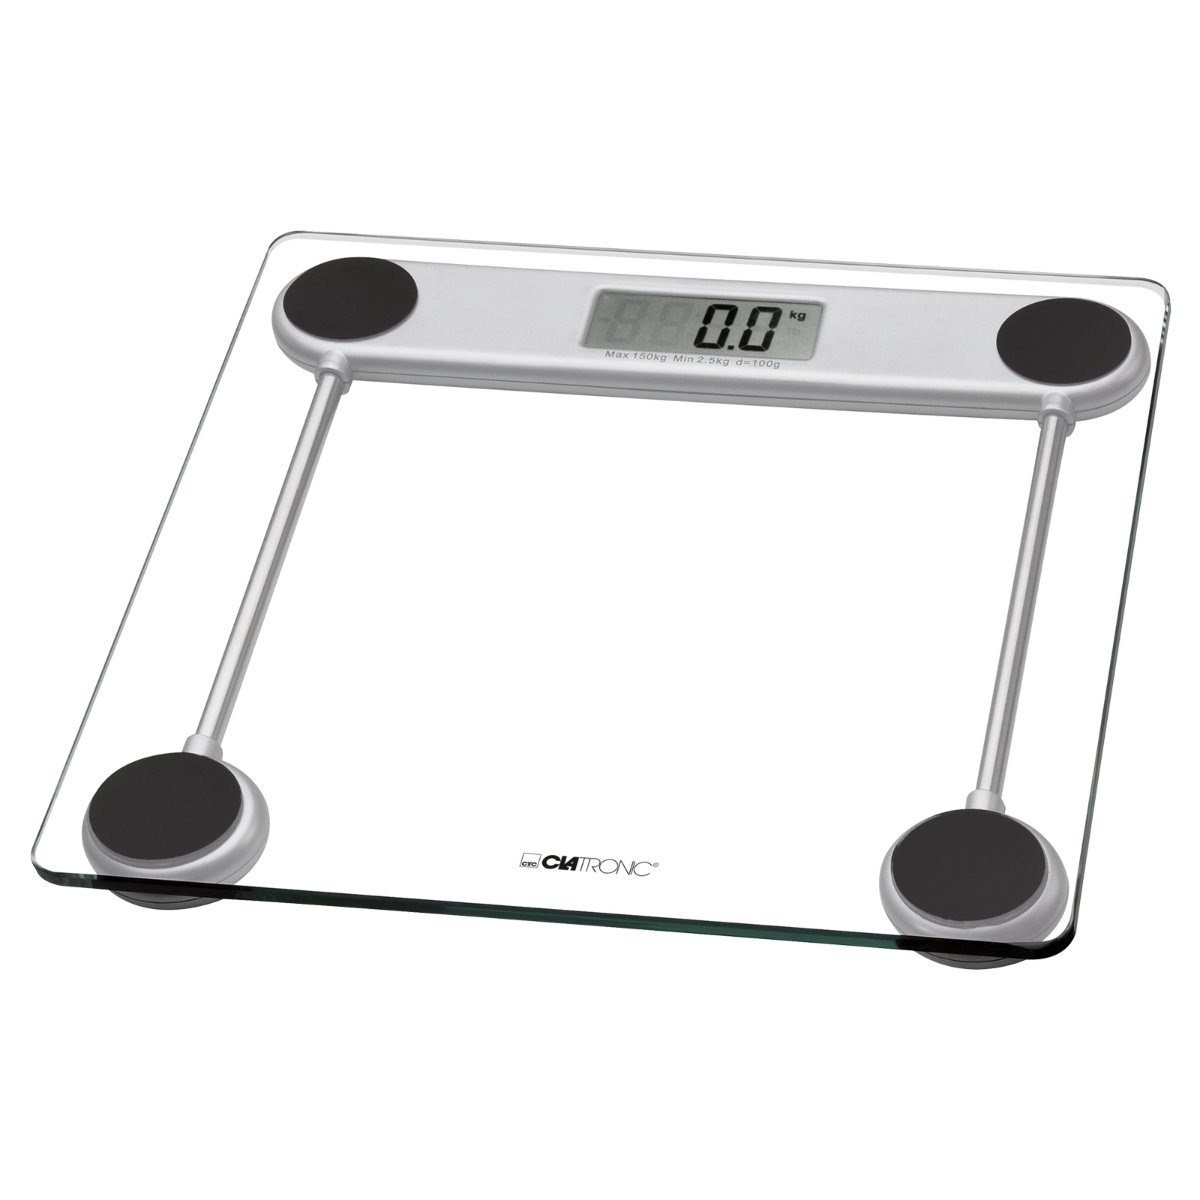 Digital Clatronic Pw 3368 bascula de bano cristal medicion 150 kg y 100g baño personal bla corporales templado alta 100